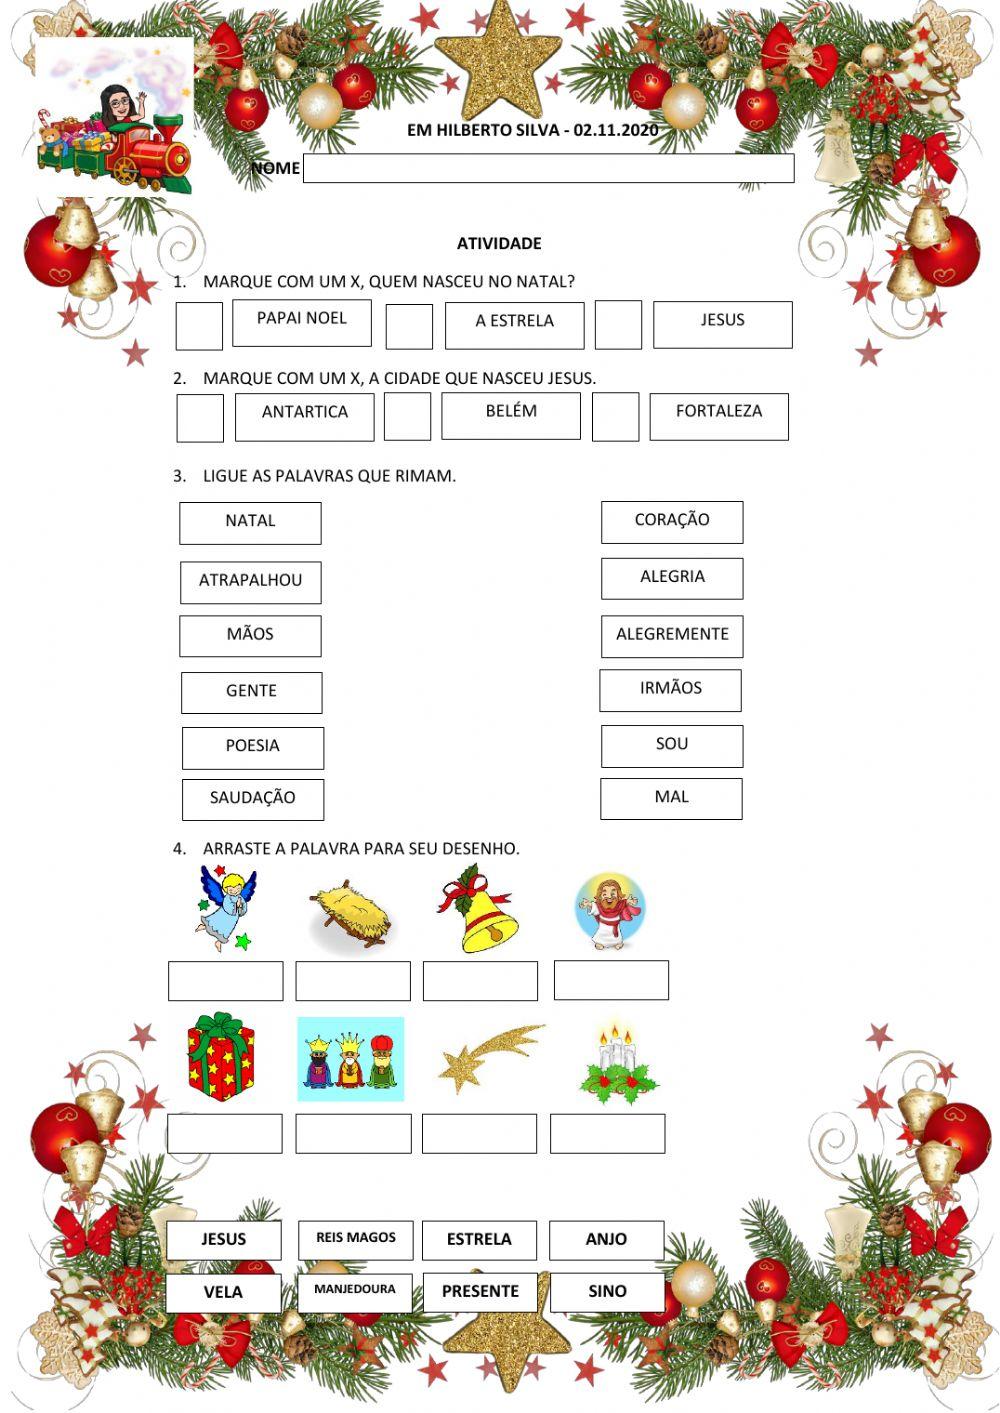 Jogral de Natal, PDF, Natal